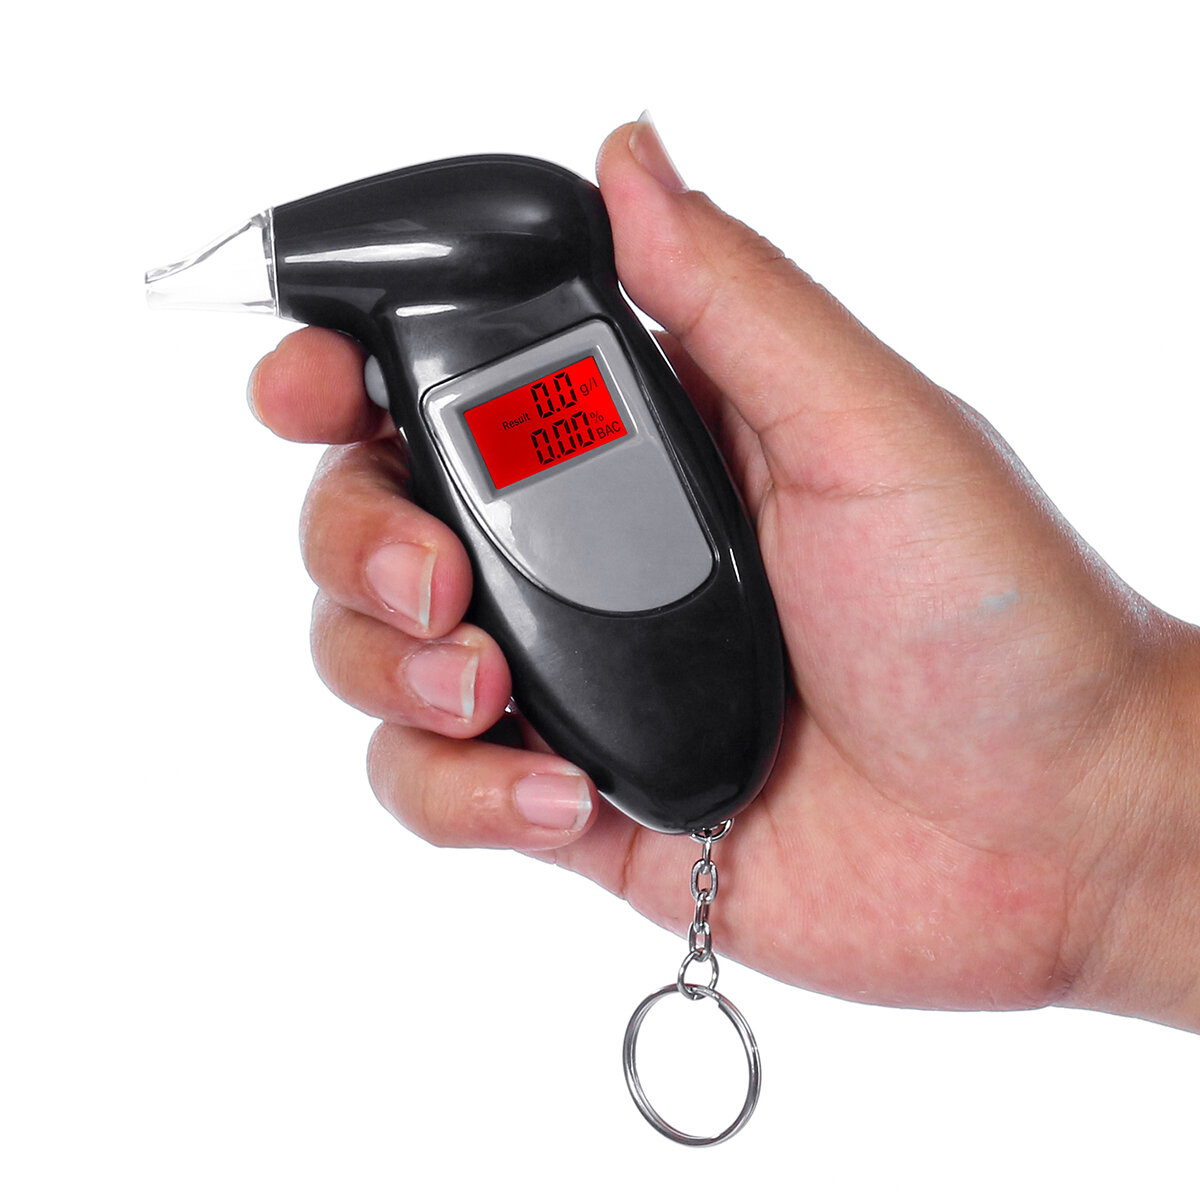 

LCD Digital Alcohol Breath Analyzer Breathalyzer Tester Detector Test Backlight